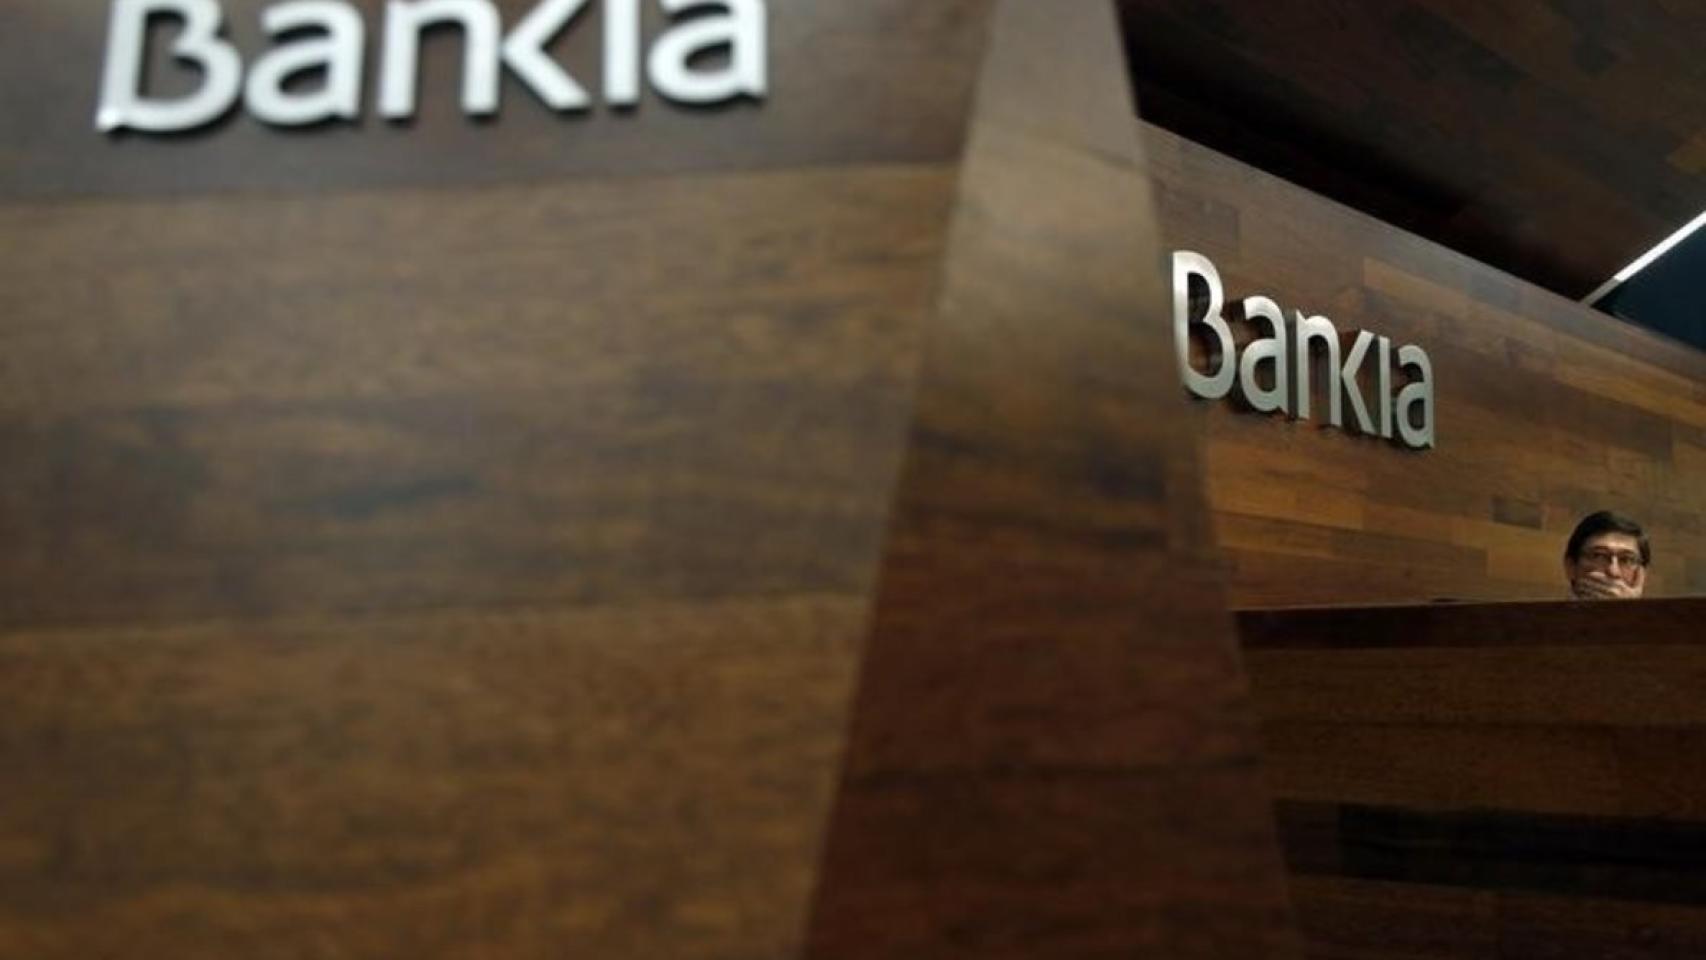 Los 'vikingos' estiran de nuevo su presencia bajista en Bankia